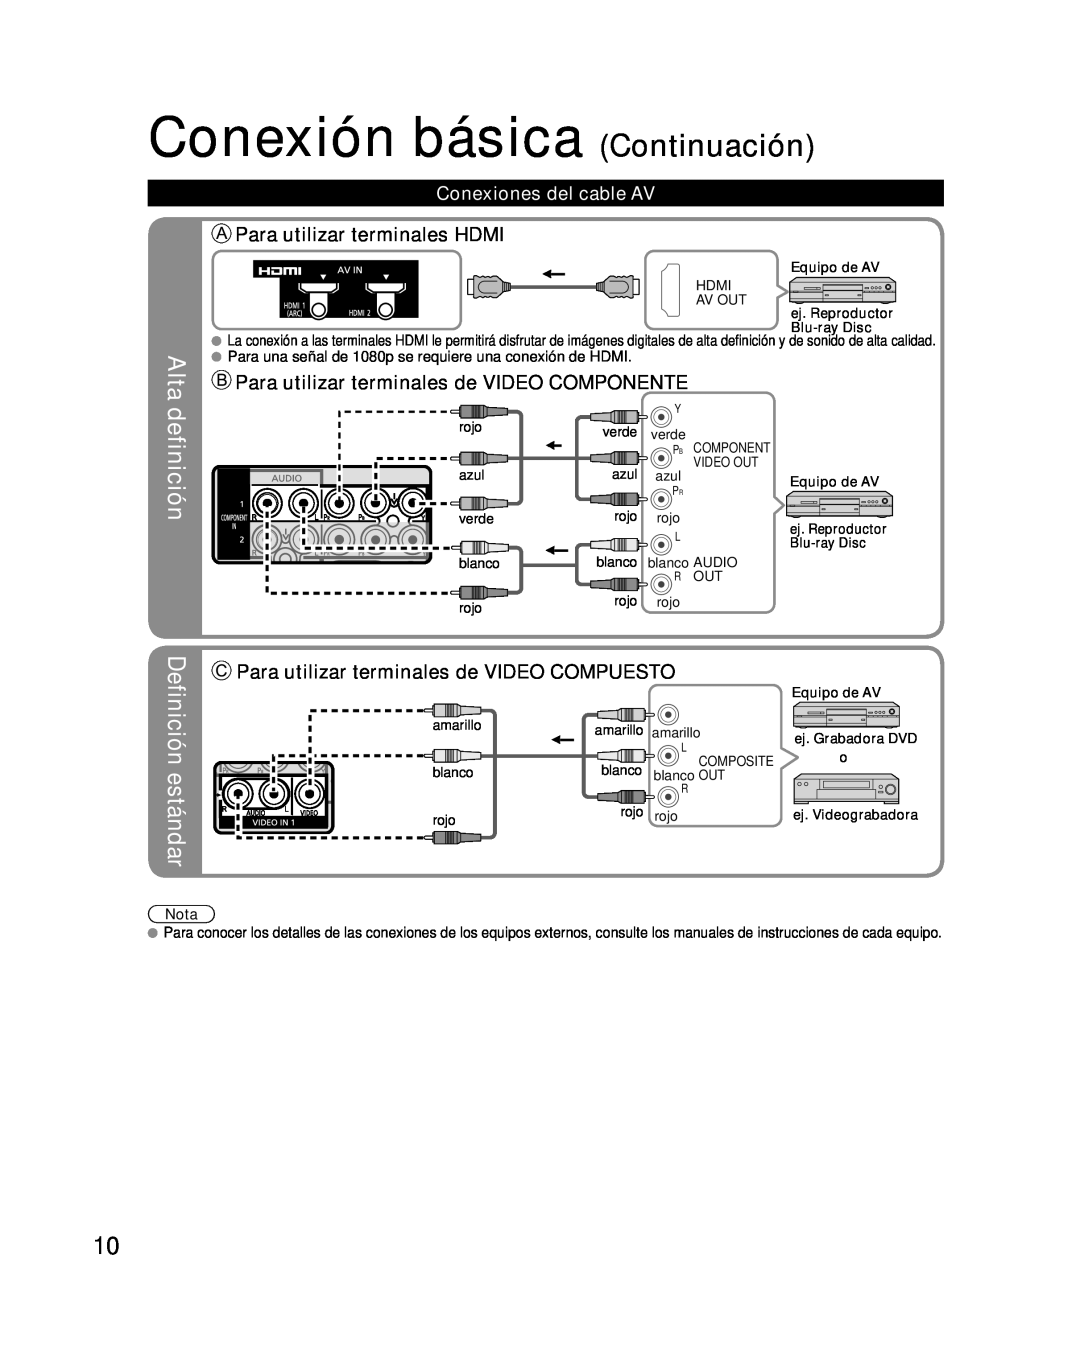 Panasonic TQB2AA0576 Conexión básica Continuación, Alta definición, Definición estándar, Para utilizar terminales HDMI 